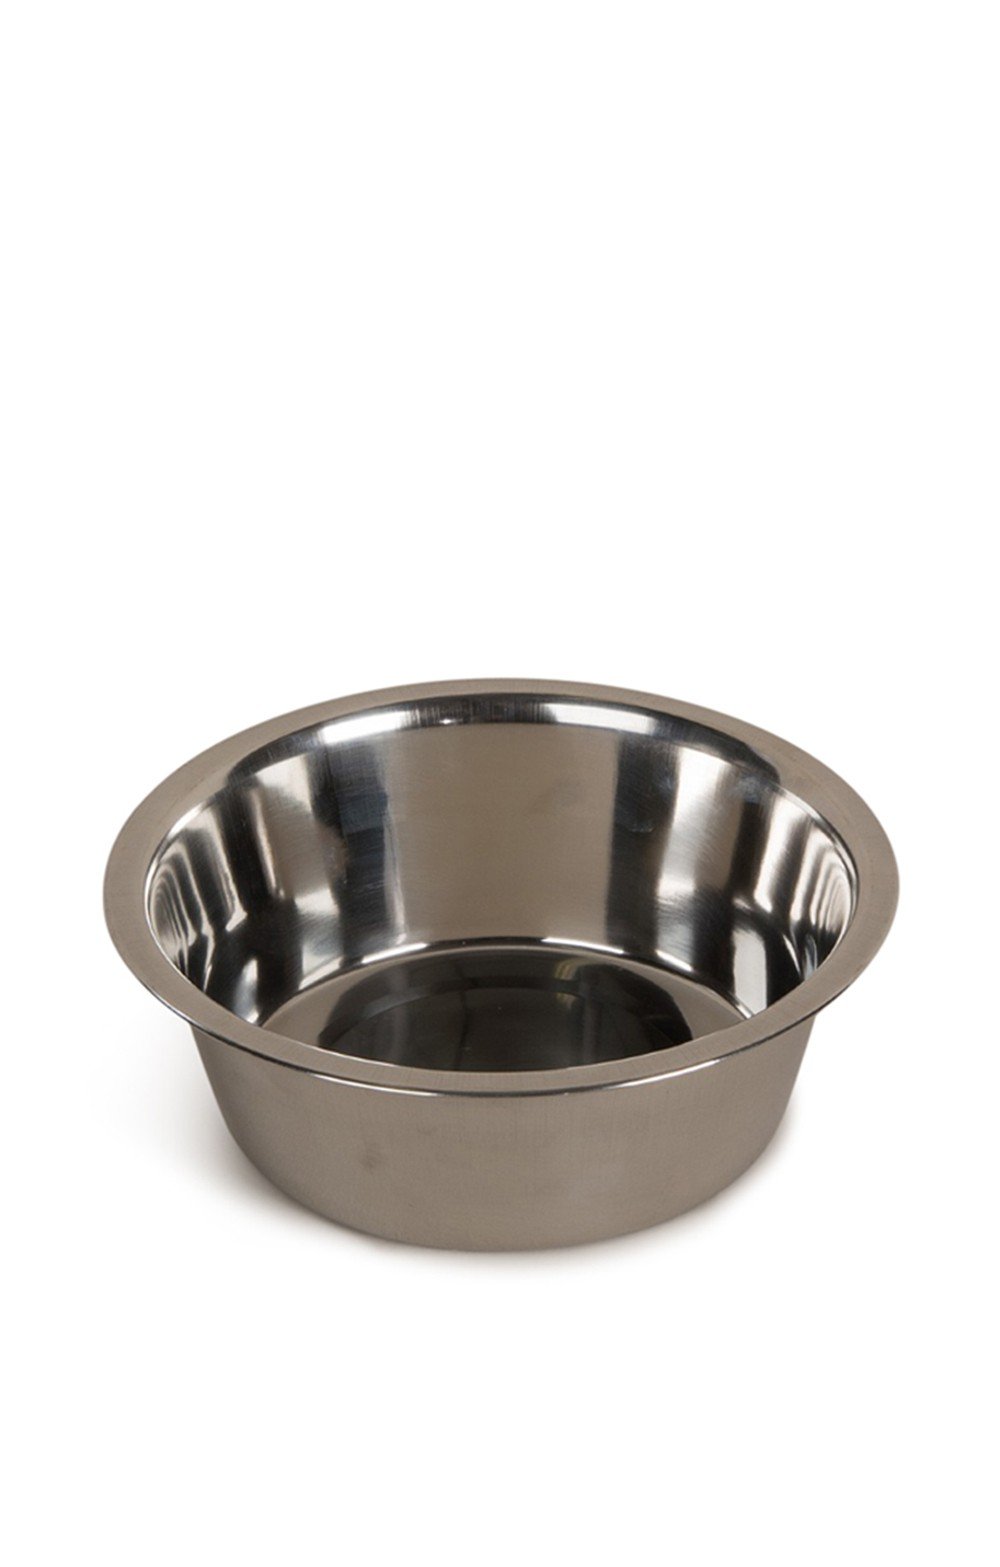  Medium Stainless Steel Non-Slip Dog Bowl